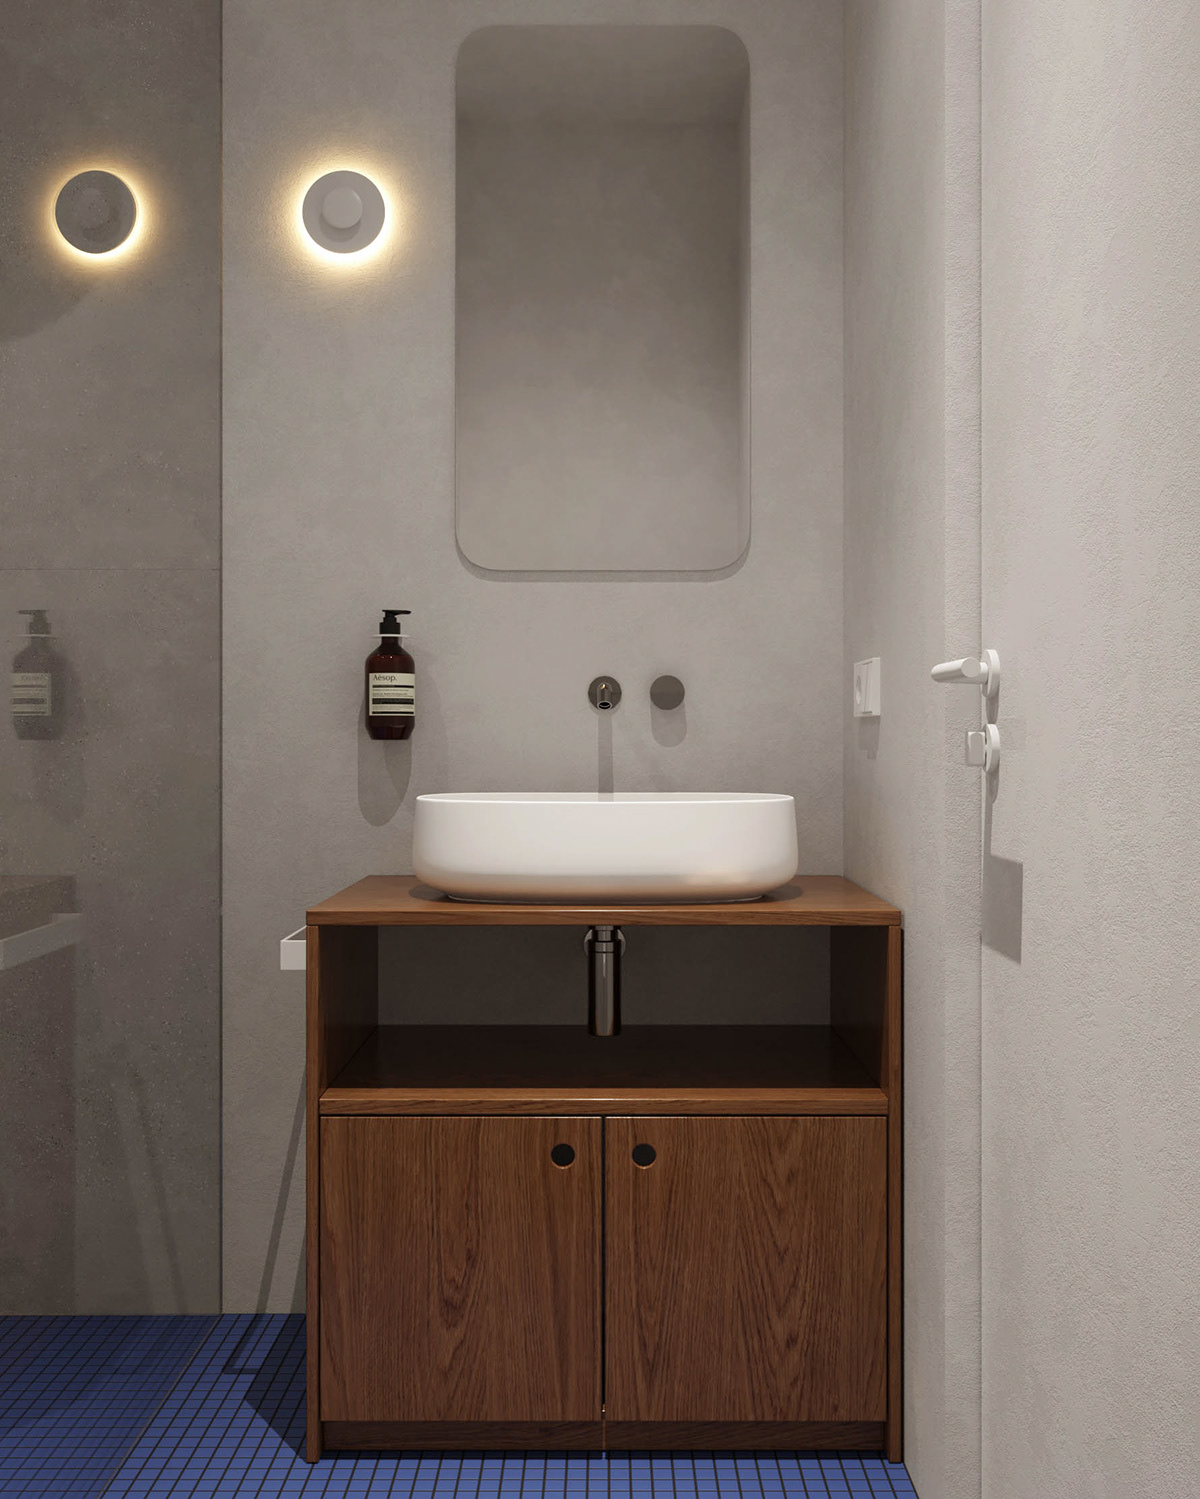 3ds max bathroom bedroom childroom corona render  kitchen living room plywood Scandinavian